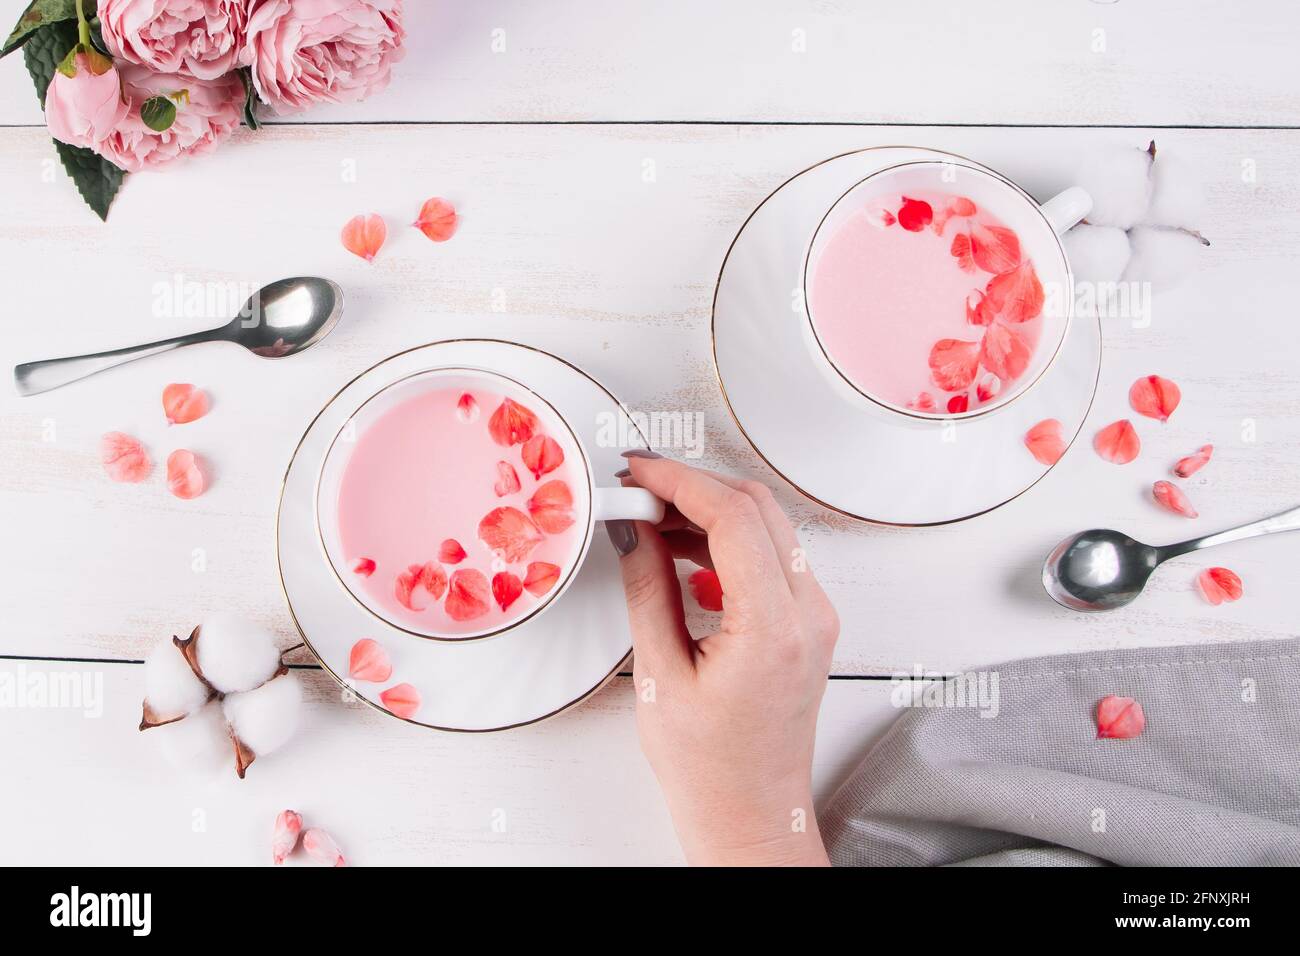 Matcha rosa con petali di rosa su sfondo bianco. La mano femminile tiene una tazza con il tè vegan di tendenza. Drink rilassante nel periodo sonnolento. Foto Stock